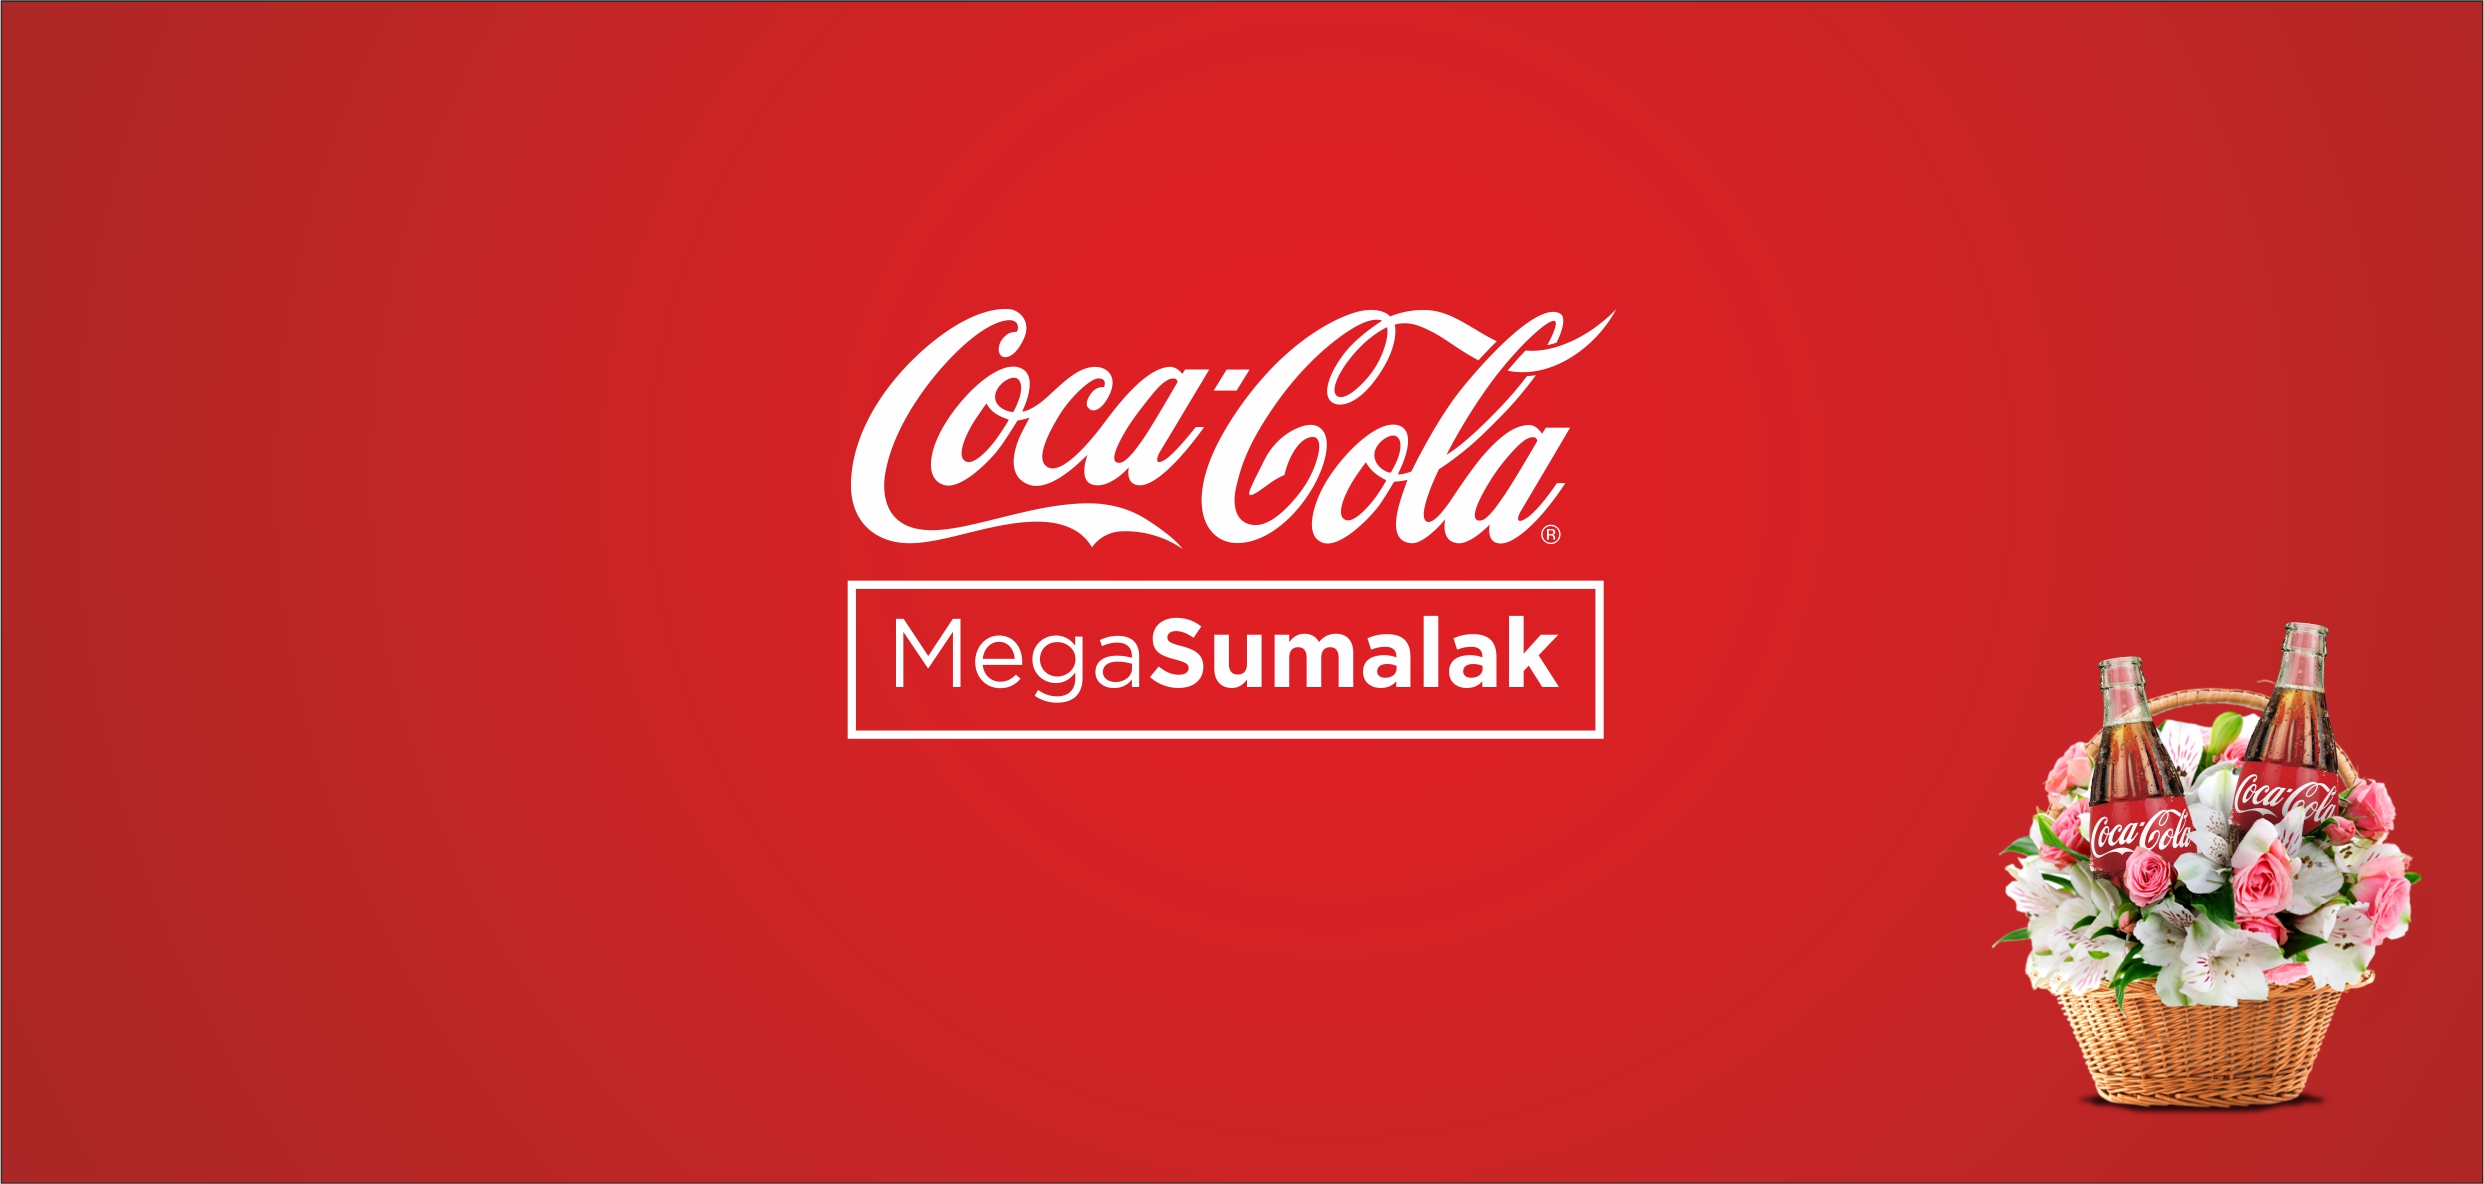 Мега-сумаляк 7 тонн от мега-завода компании Coca-Cola Uzbekistan